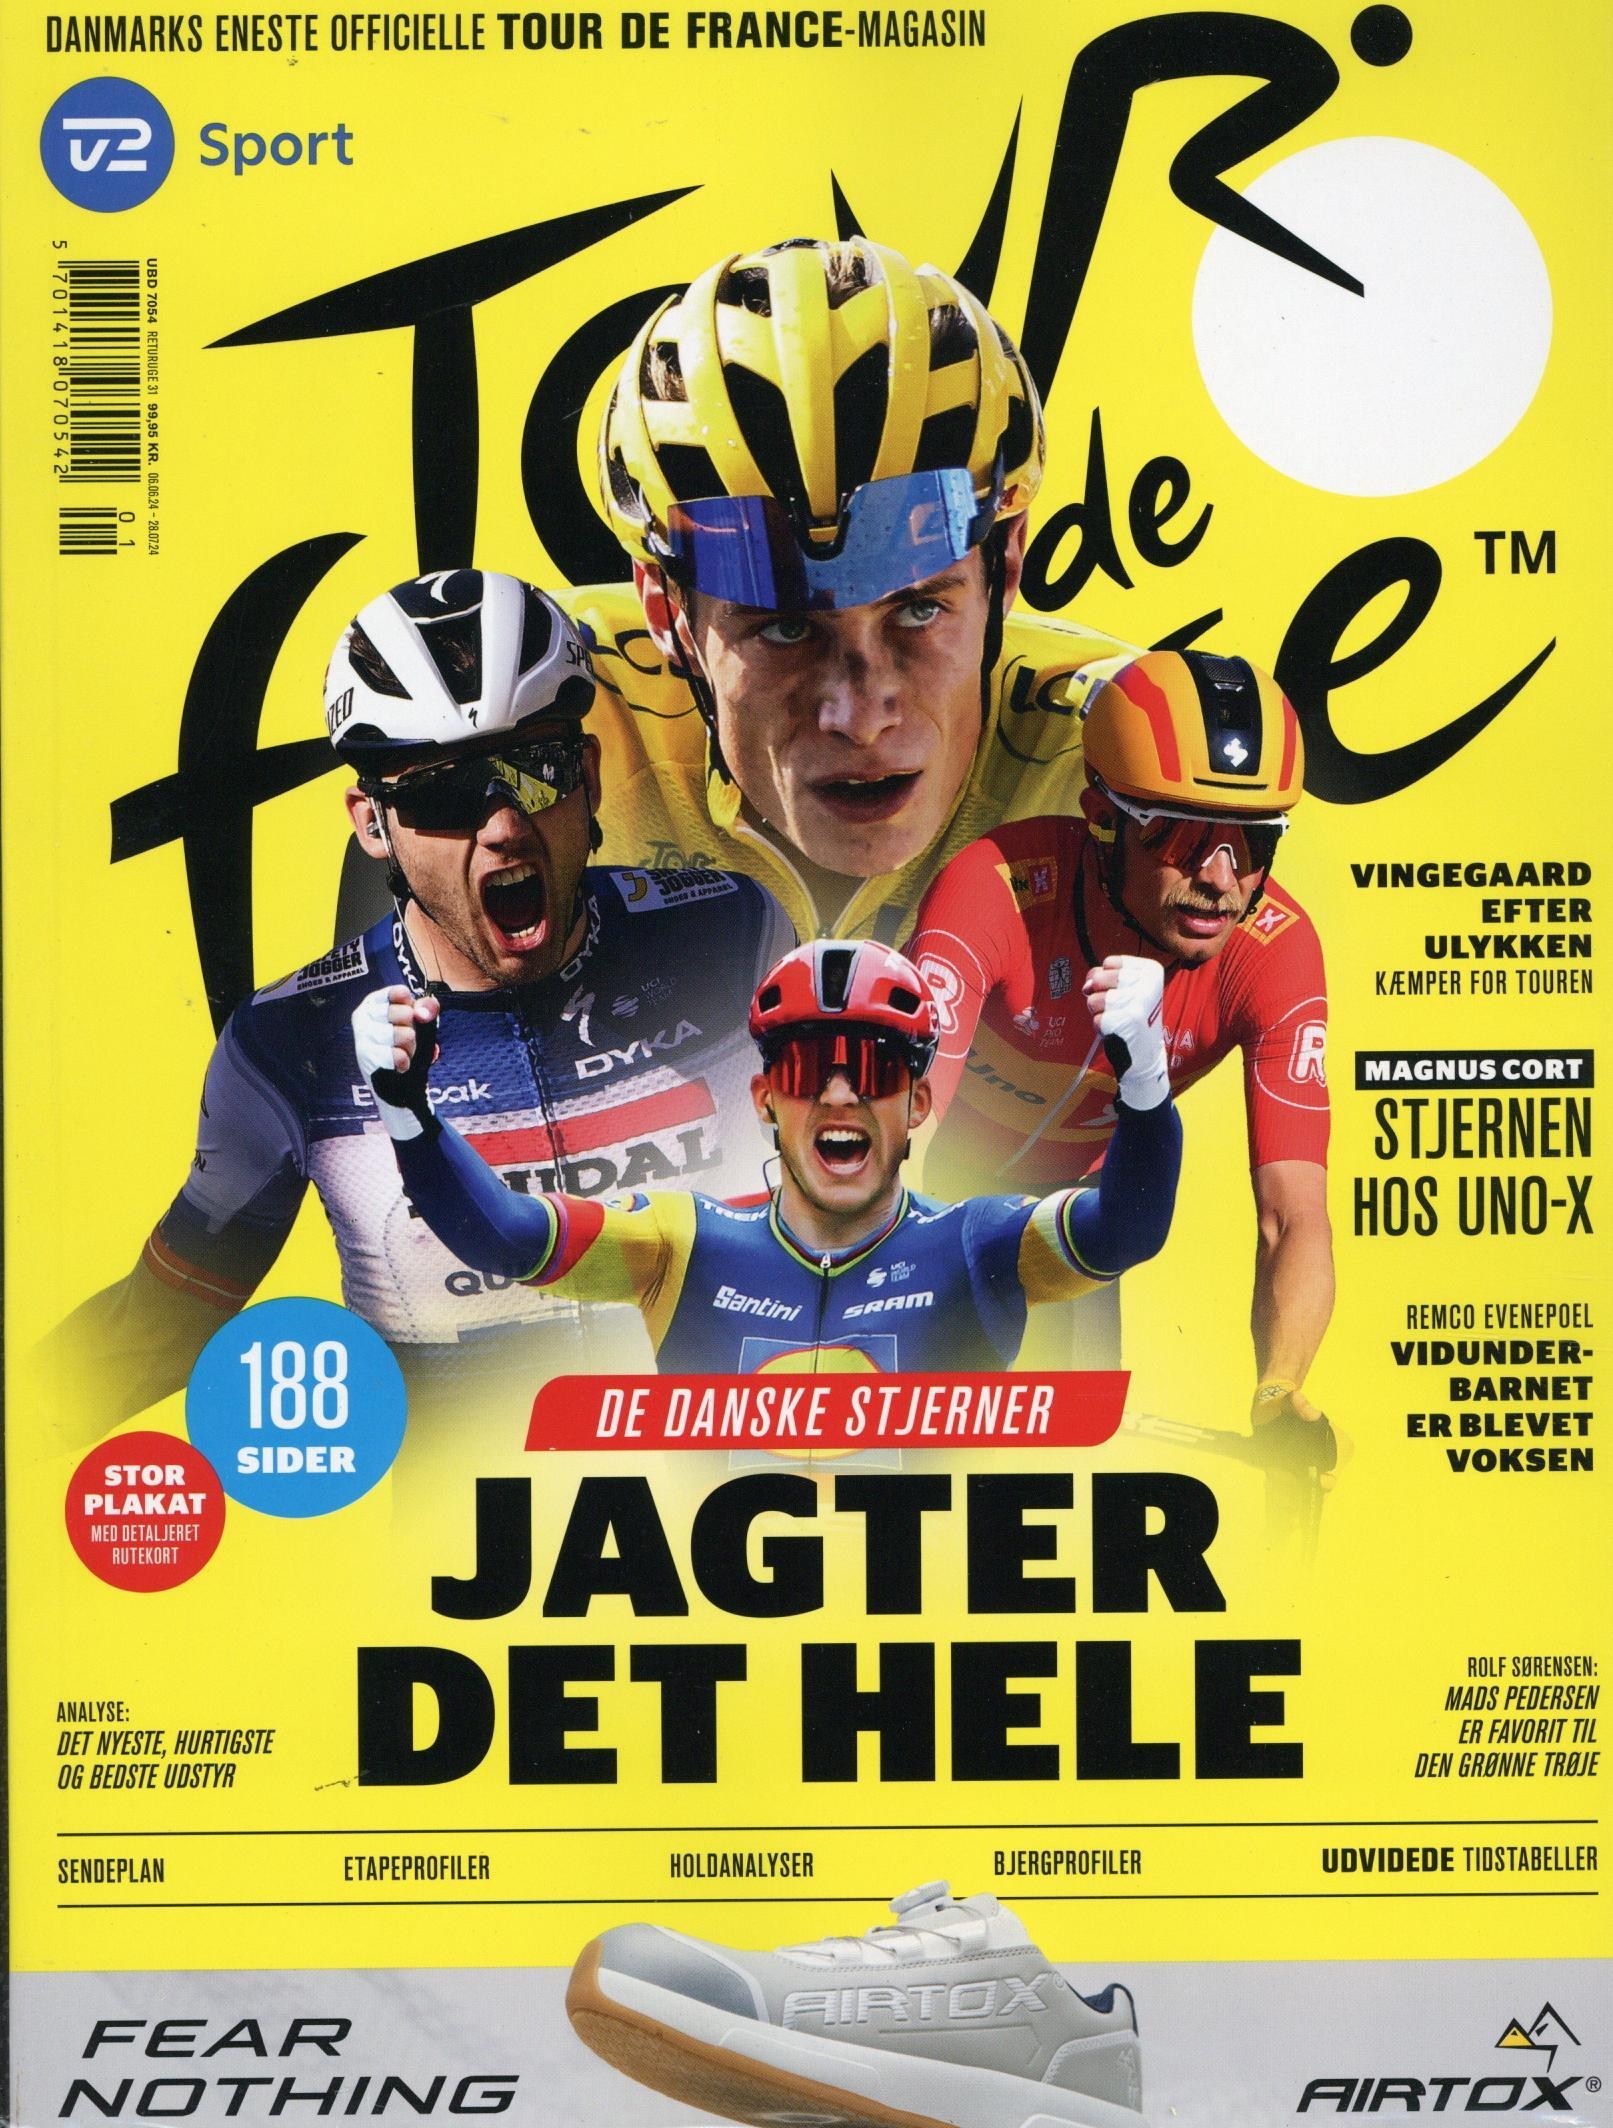 Tour De France (DK)